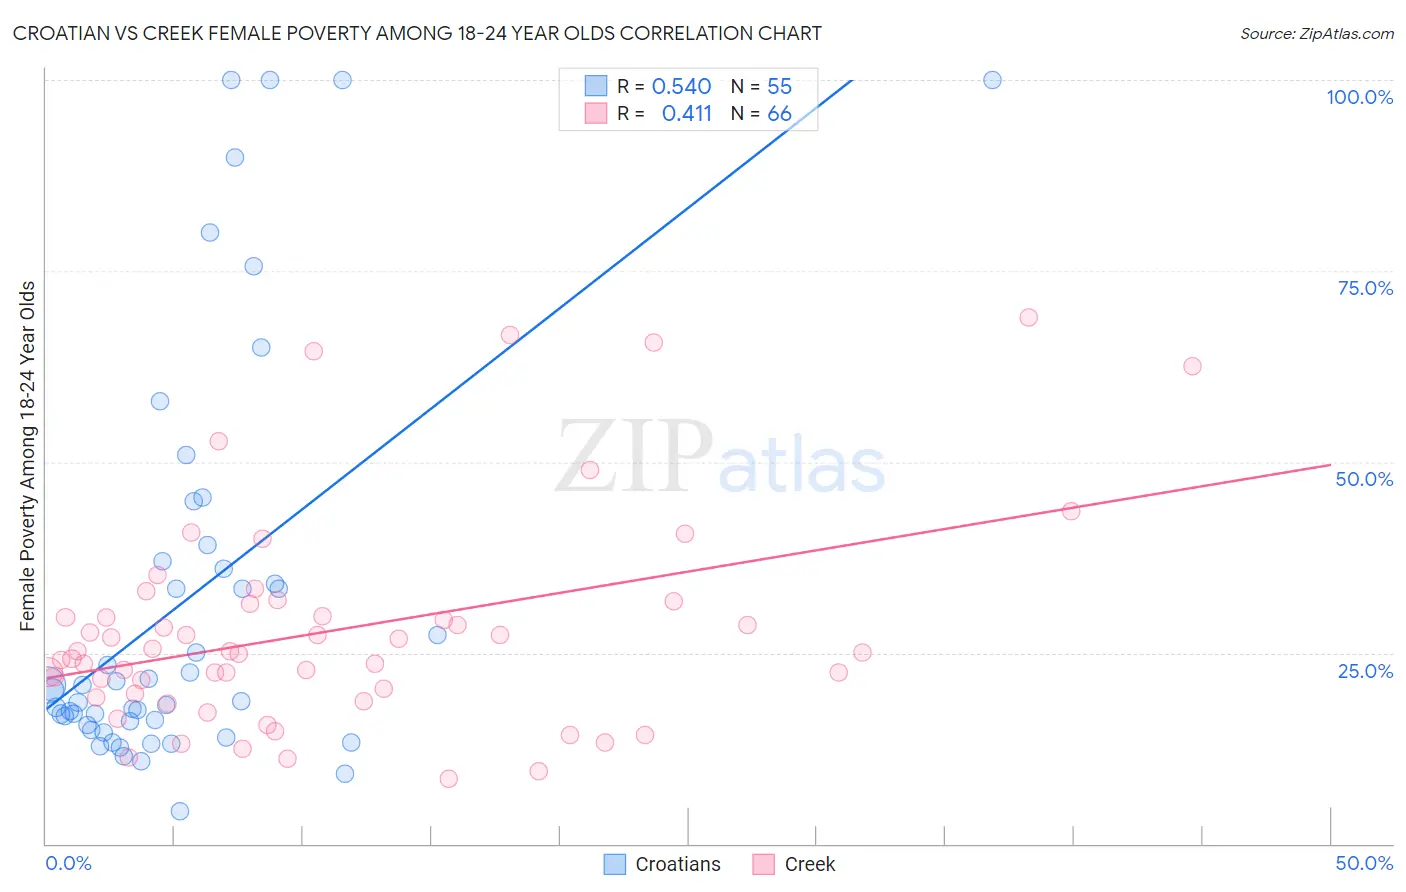 Croatian vs Creek Female Poverty Among 18-24 Year Olds